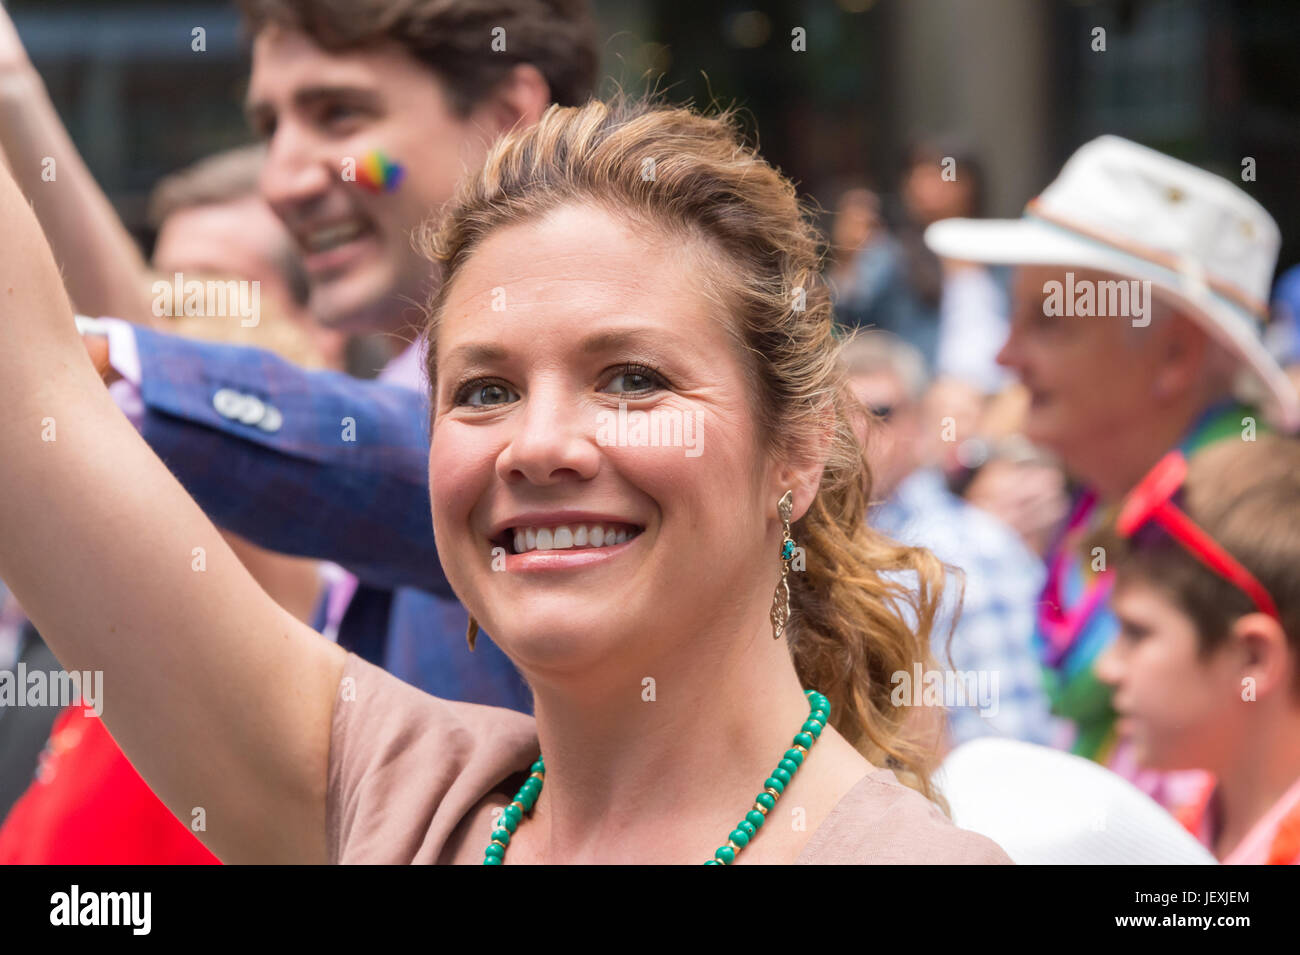 Toronto, Canada. 25 juin 2017. PM canadien Justin Trudeau's épouse Sophie Grégoire Trudeau déclinée pour l'appareil photo pendant la Parade de la Fierté gaie de Toronto Banque D'Images